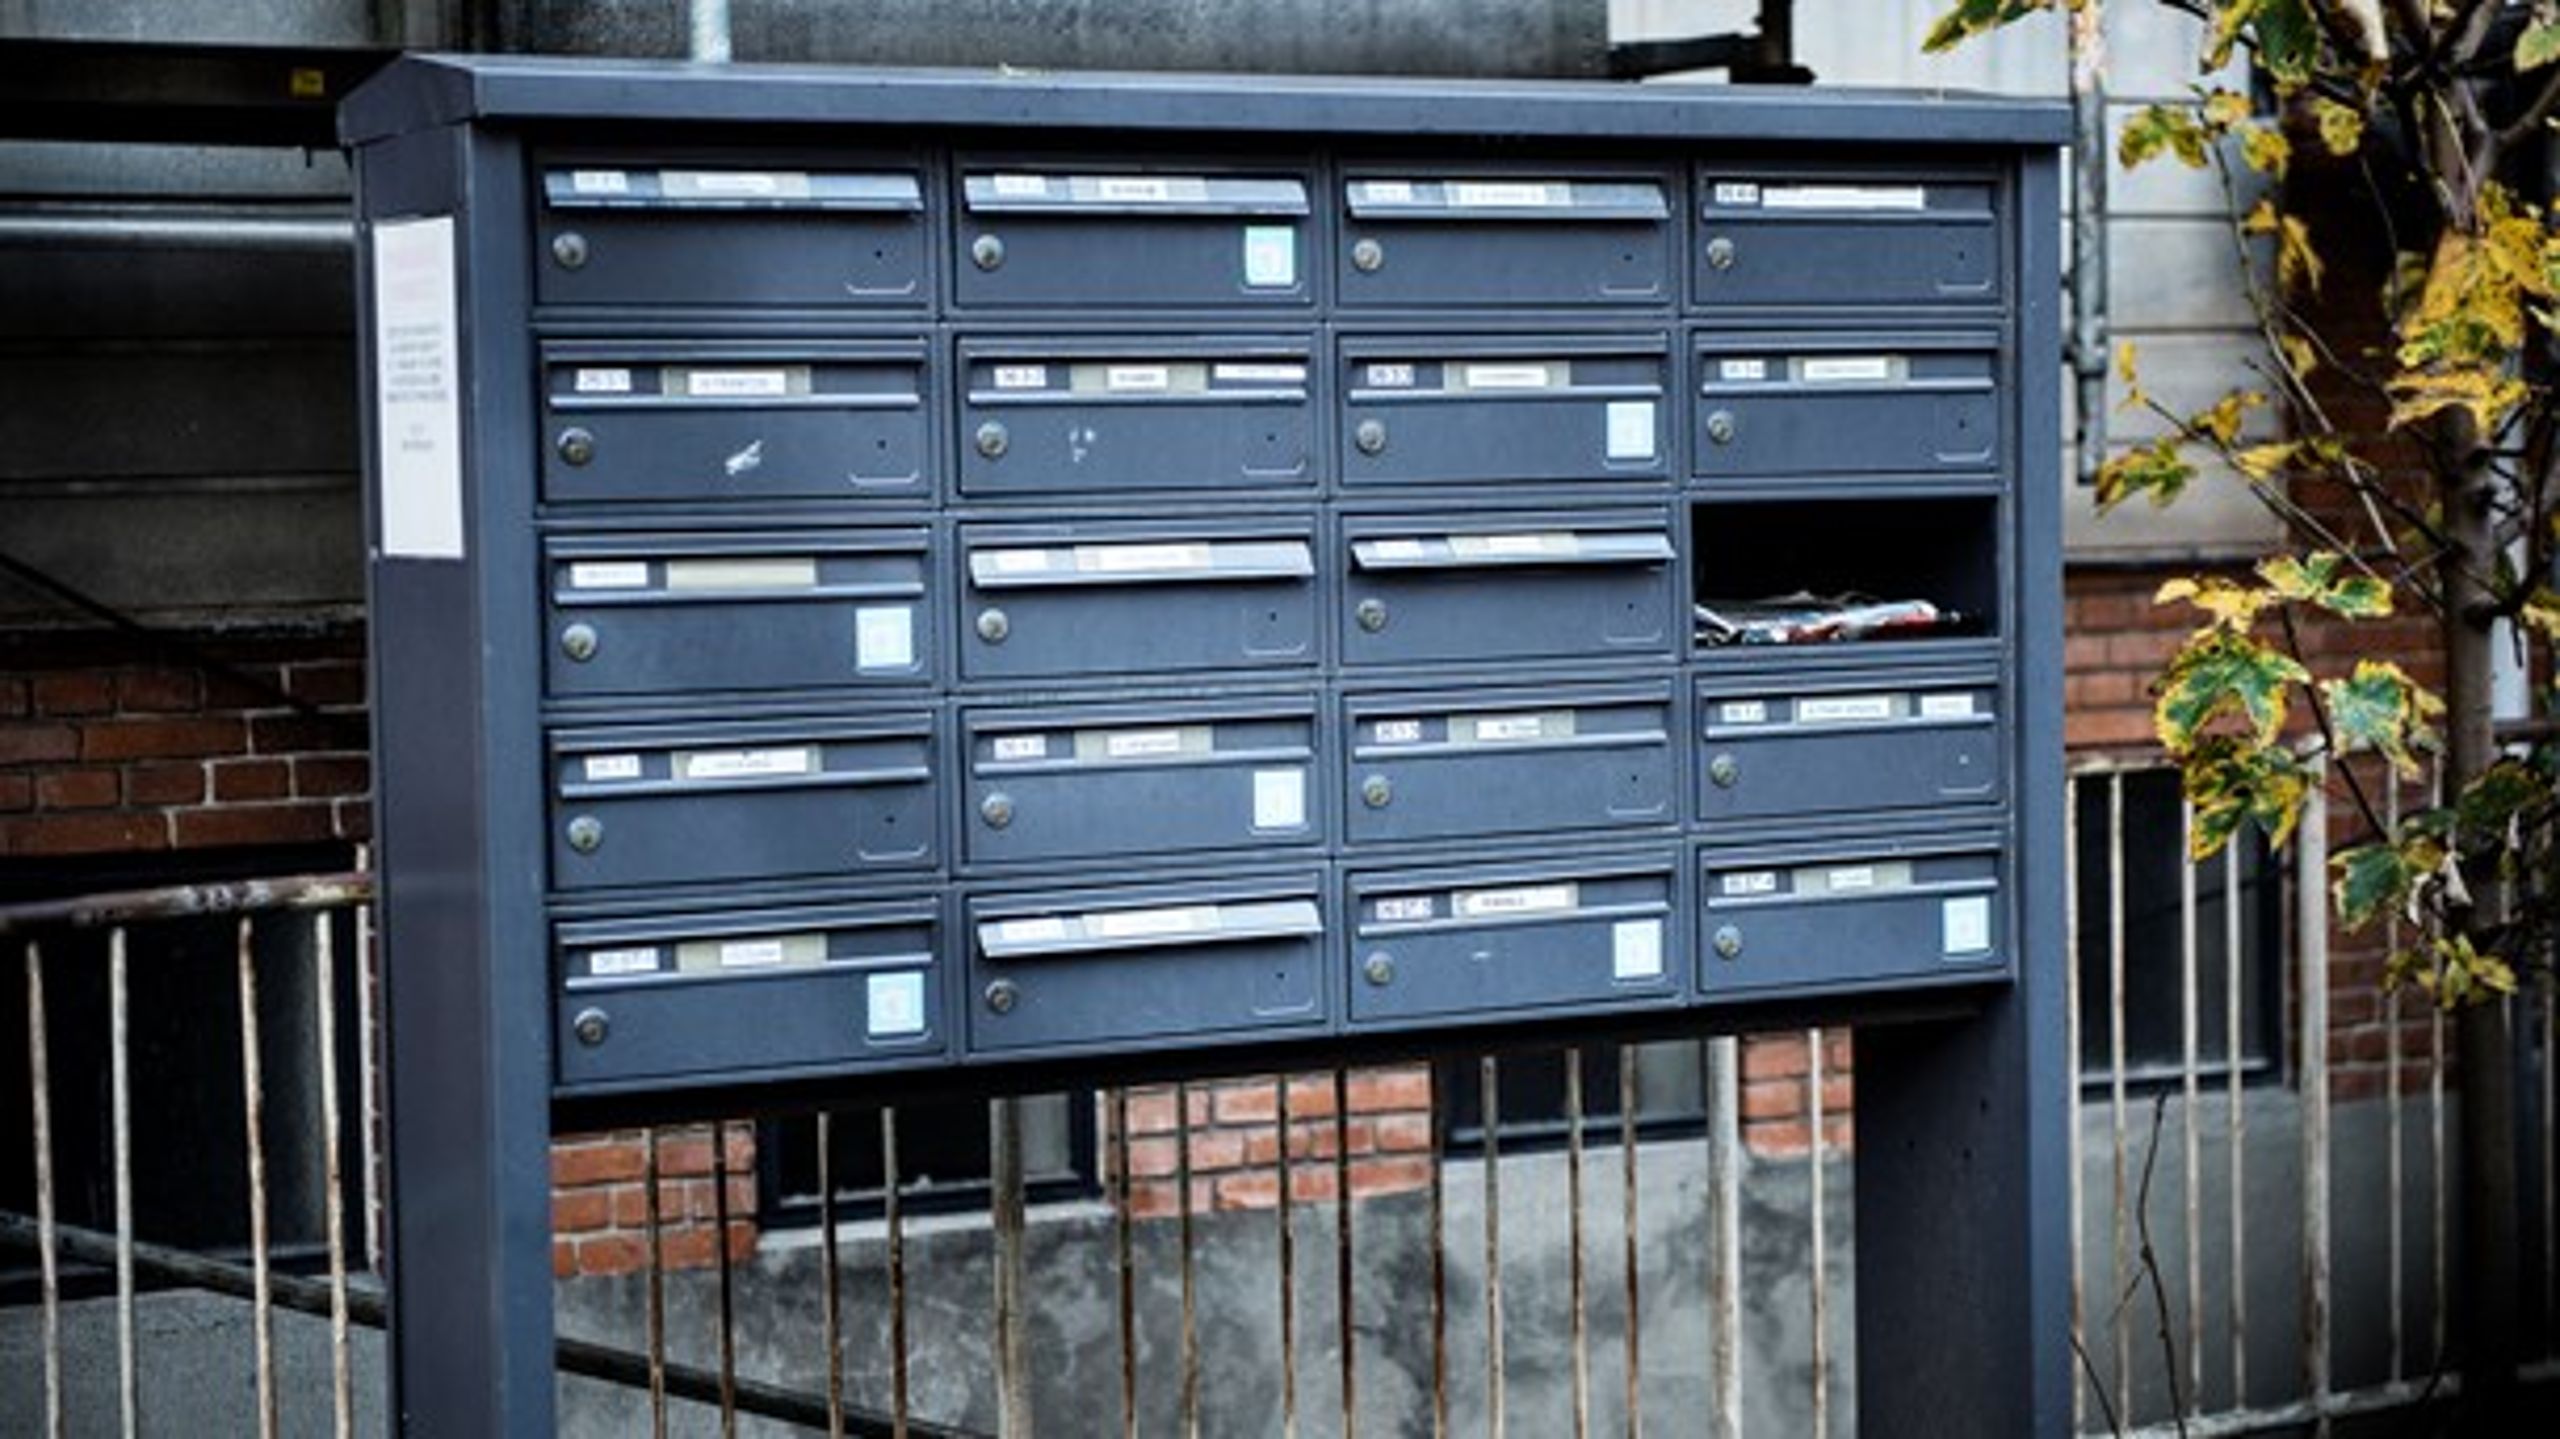 Helt ærligt: Hvor tit tømmer du selv din postkasse? Det spørger fire almene selskaber i et debatindlæg.